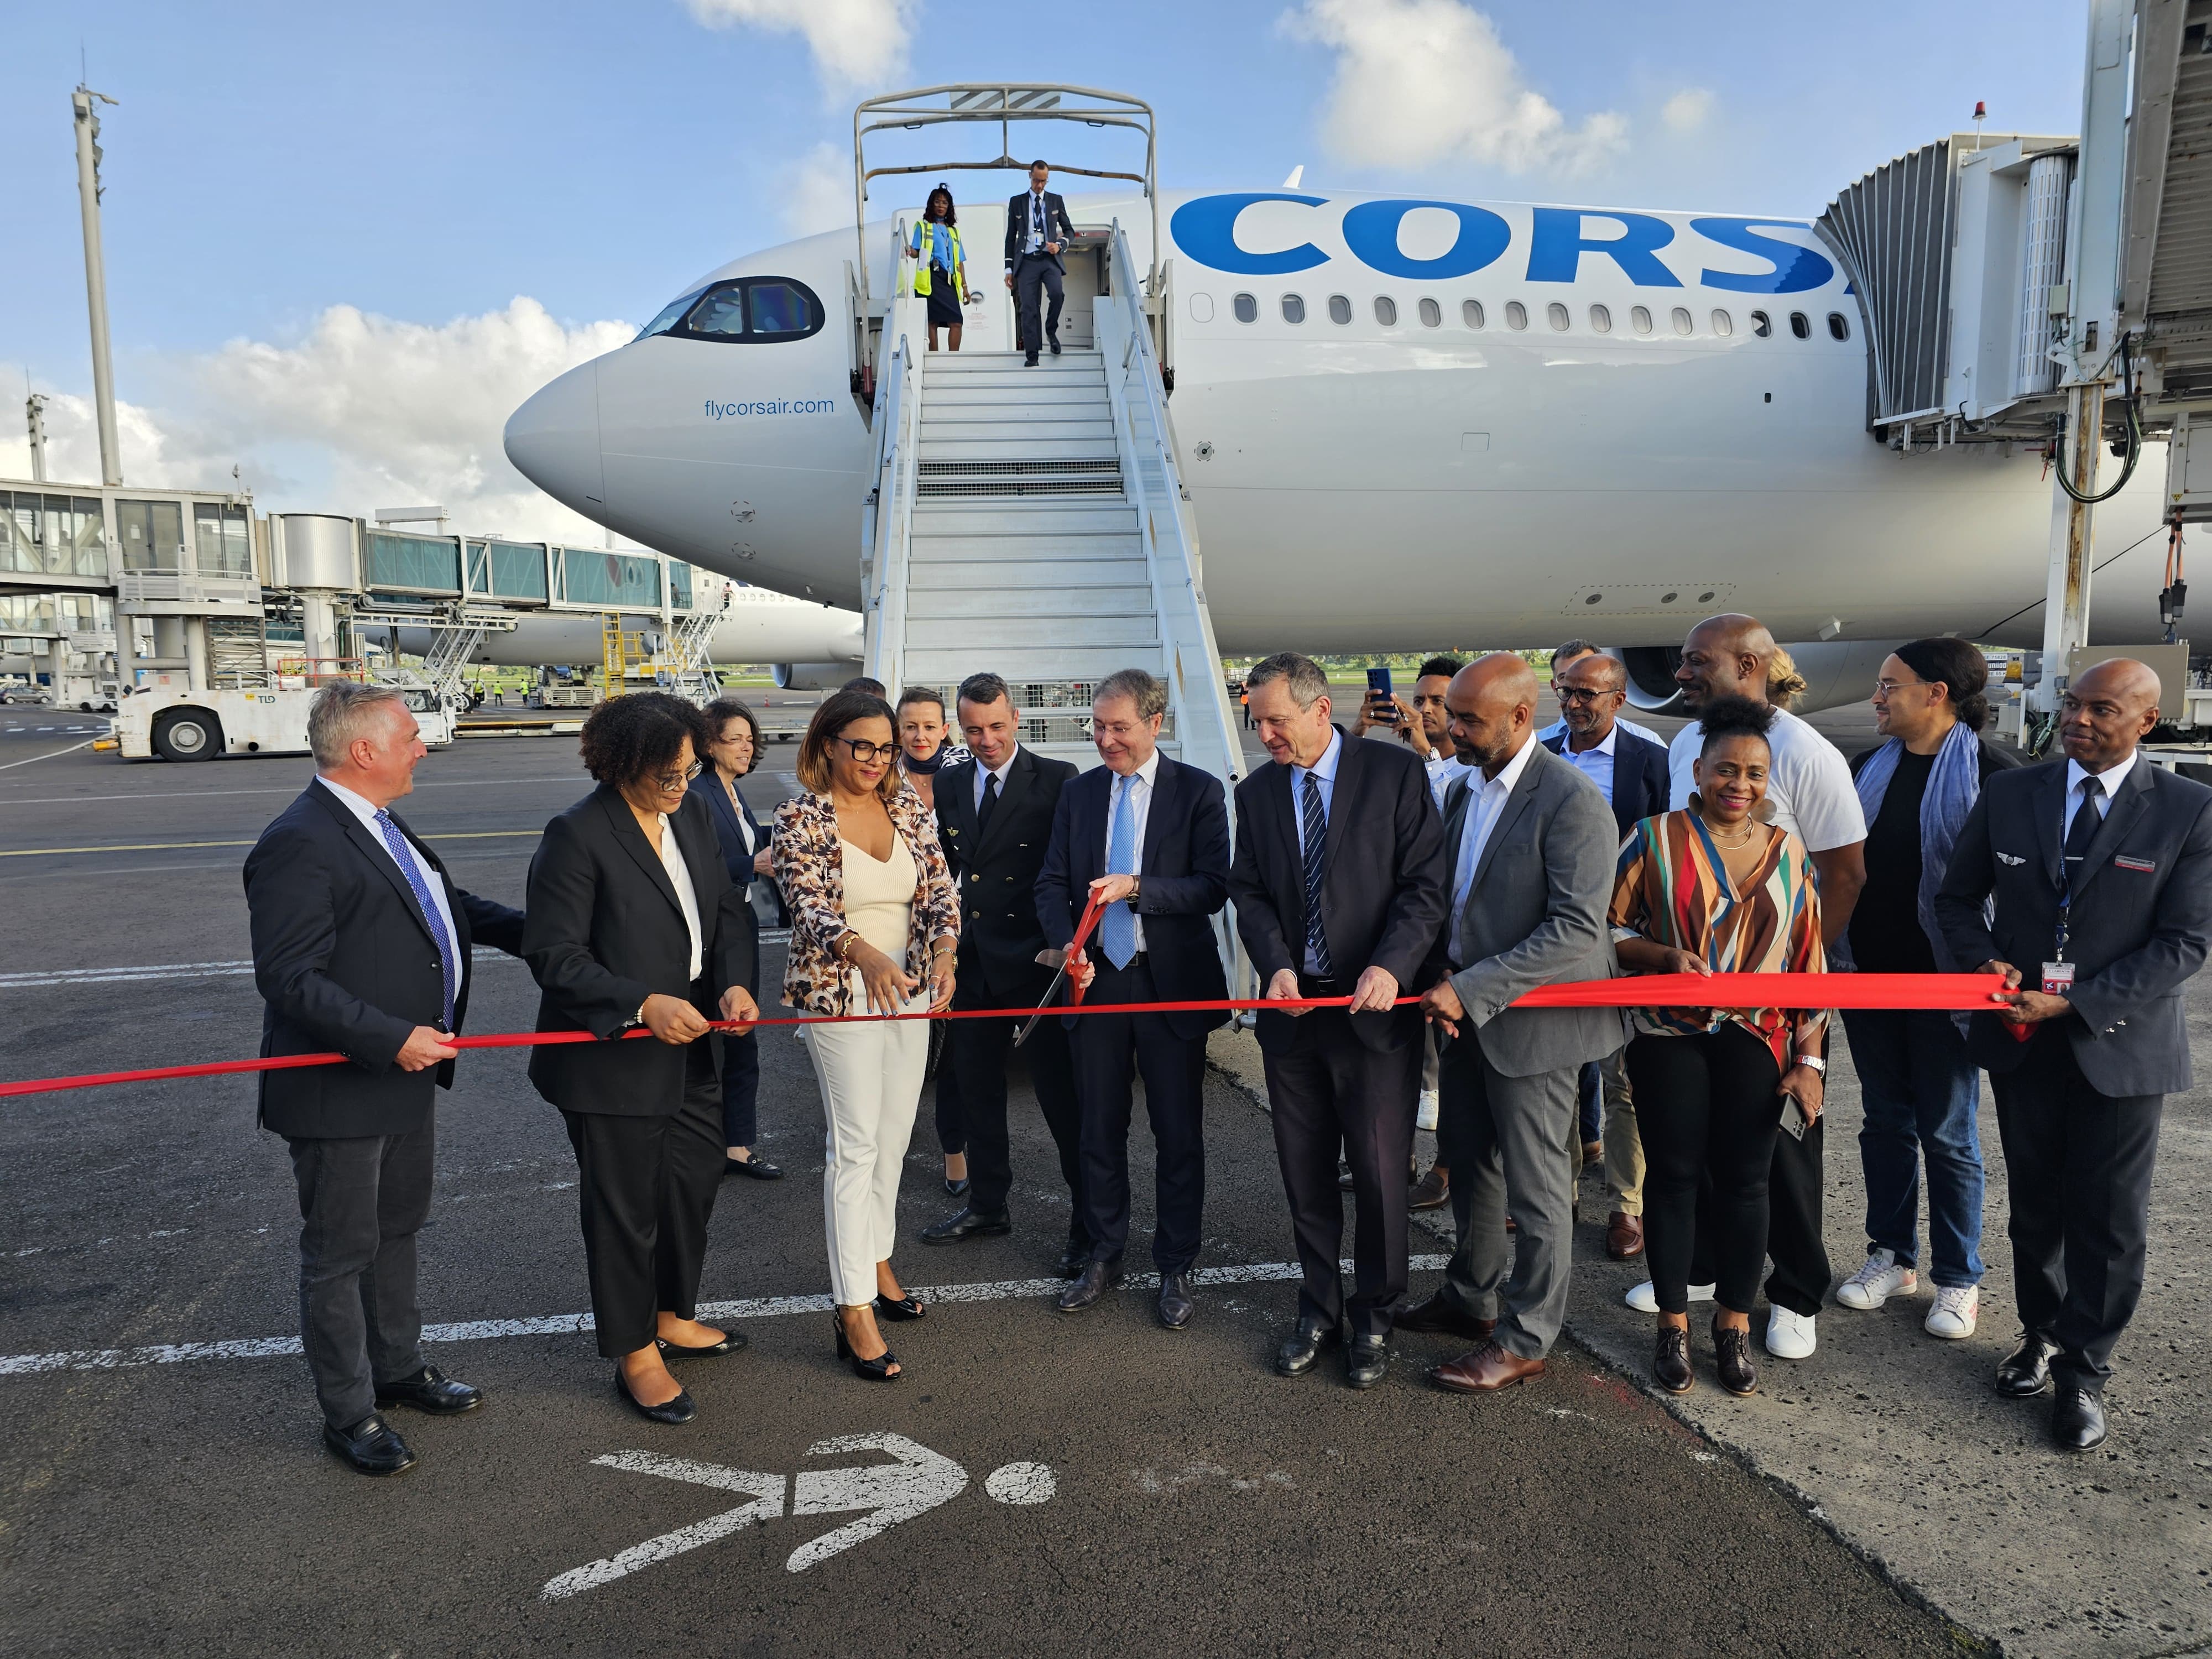     L’Airbus A330neo de Corsair, nouveau venu dans le ciel de Martinique 

